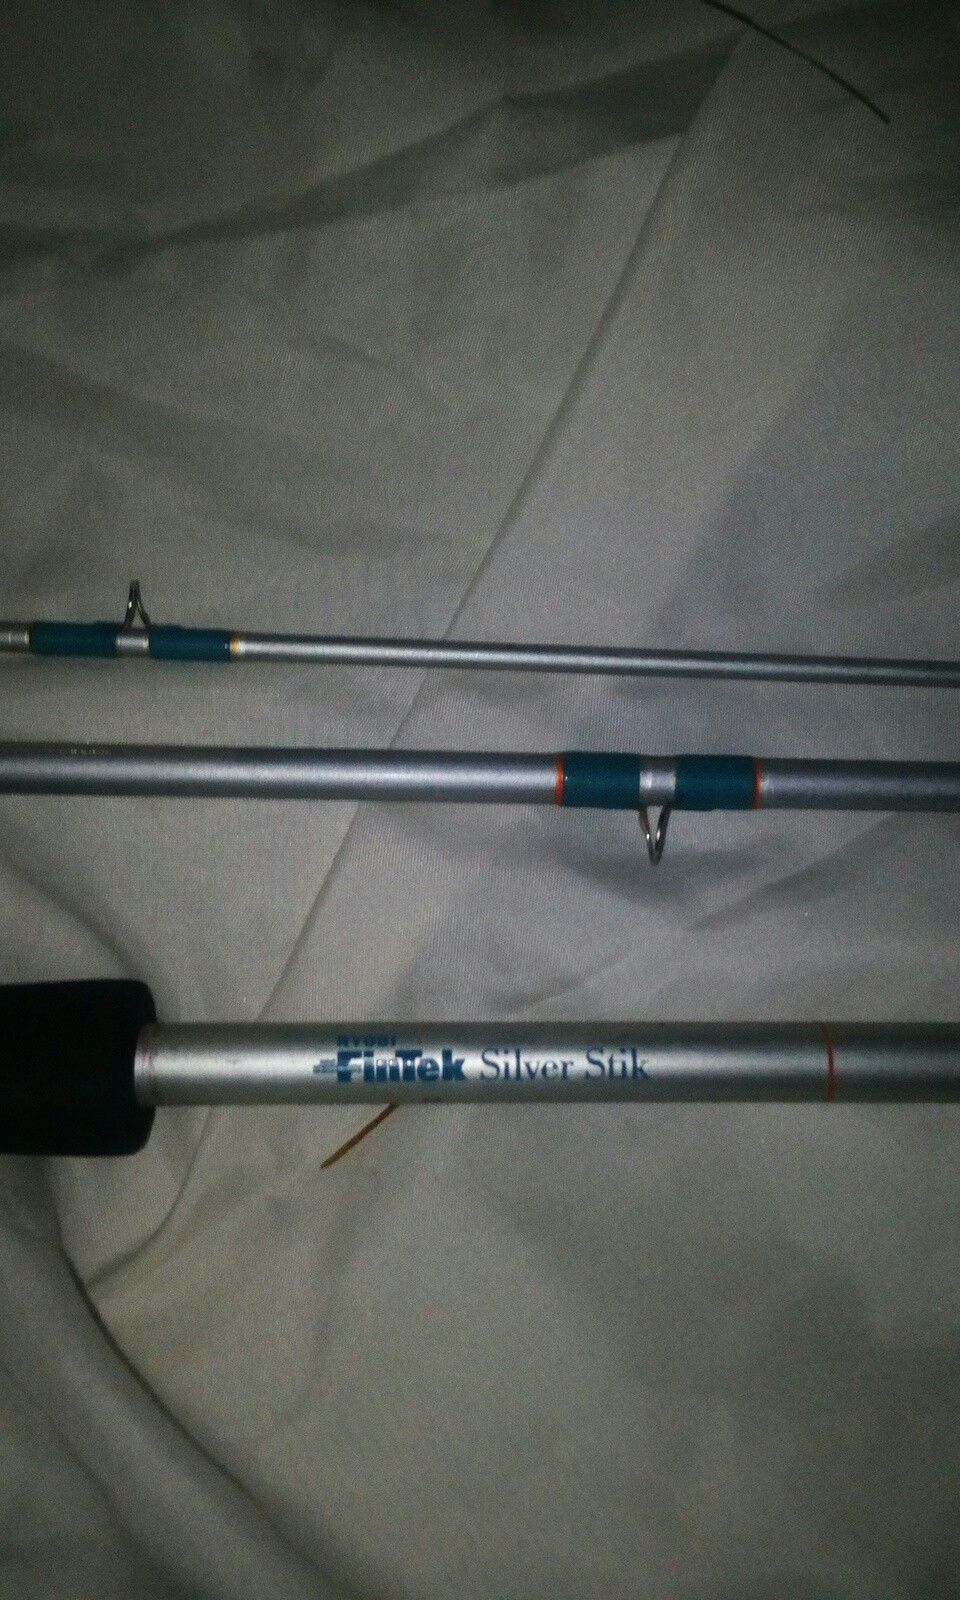 Ryobi fintek silver stick 3 piece rod, like new for Sale in Monroe, WA -  OfferUp